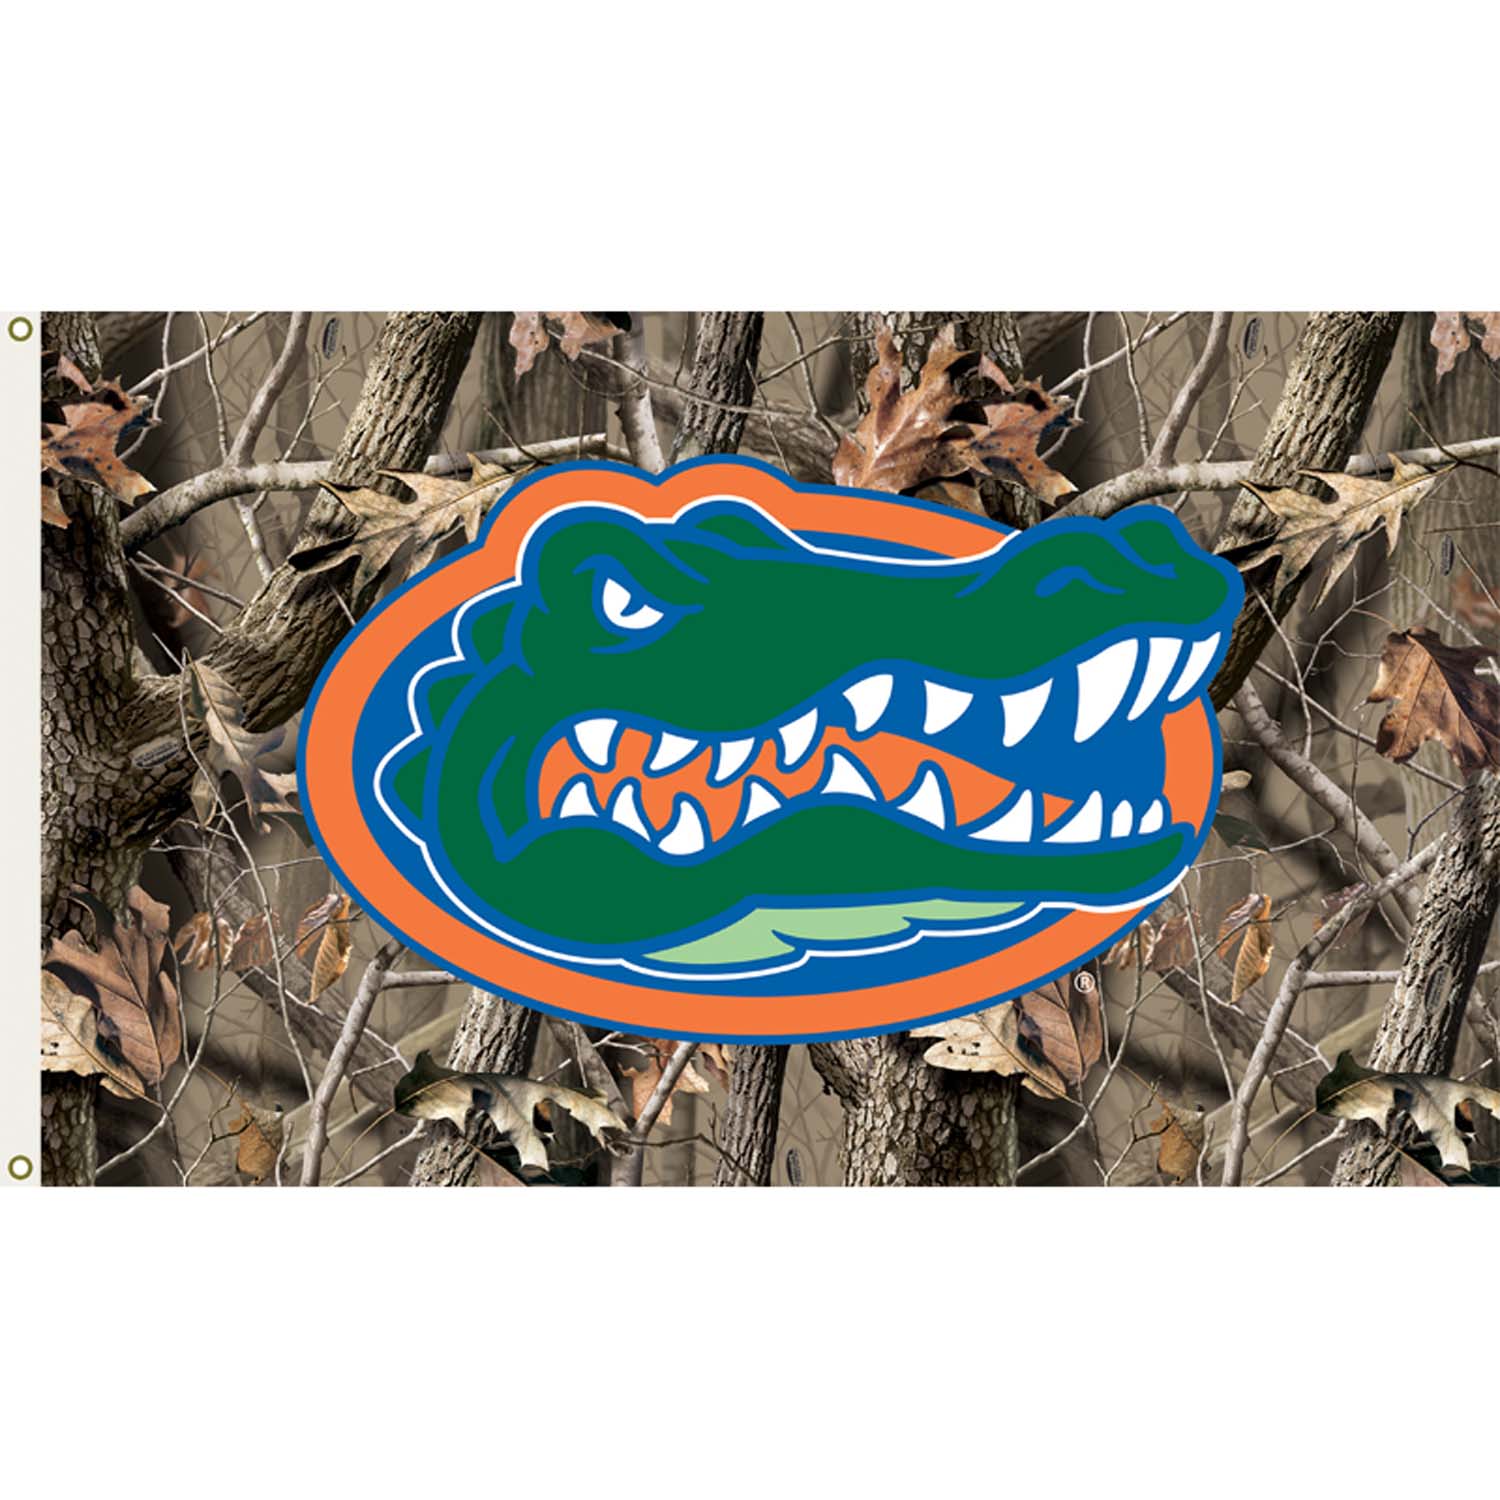 Camo Gator Logo - Florida Gators 3ft x 5ft Team Flag - Realtree Camo Design